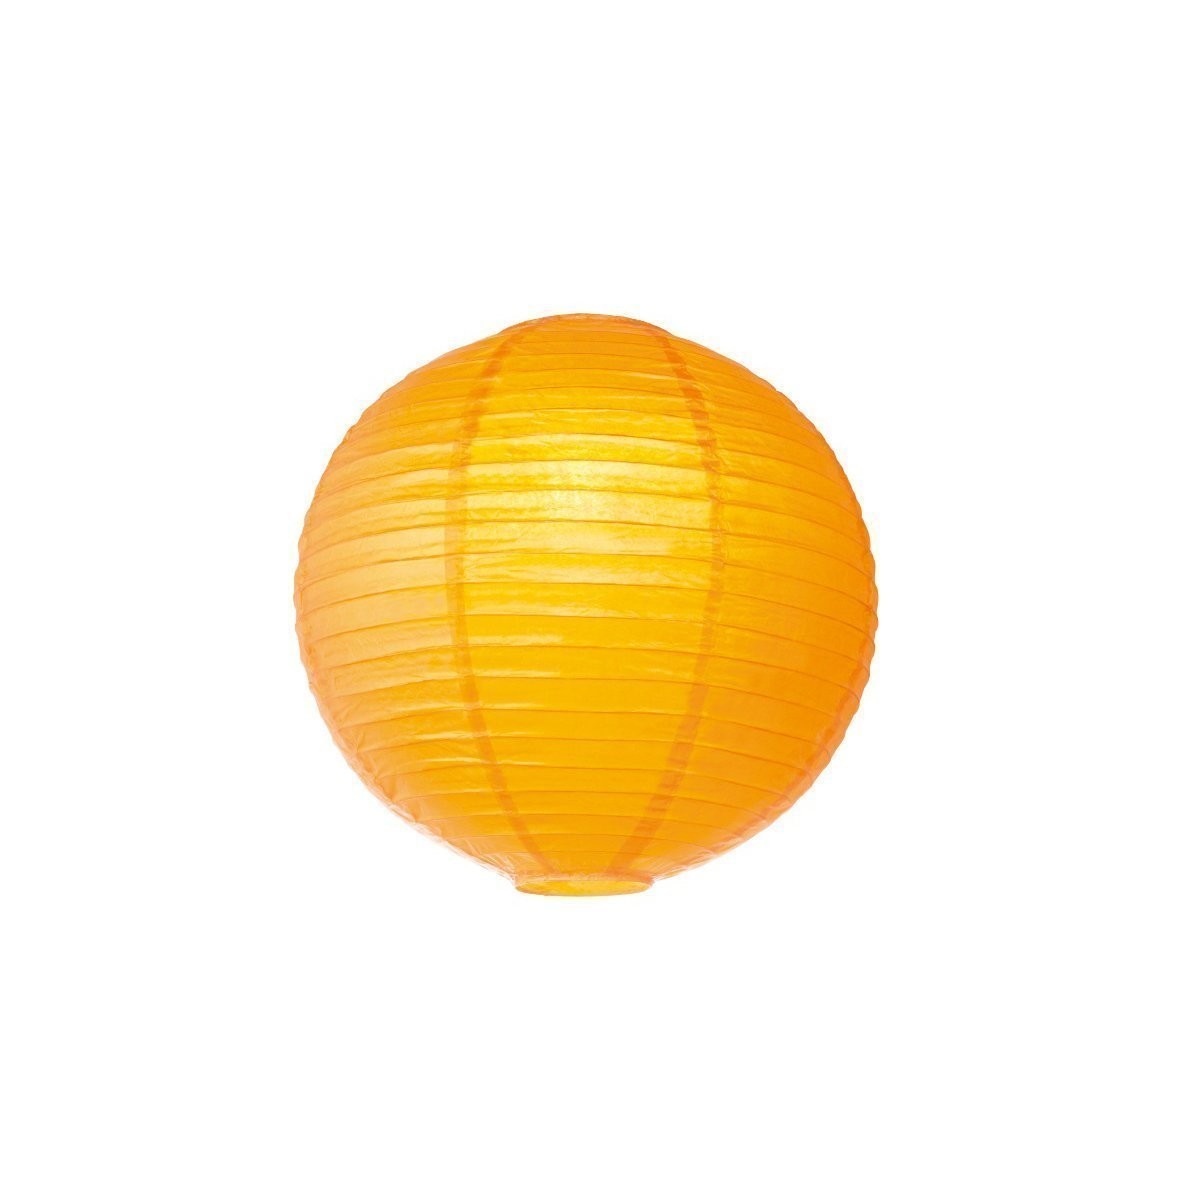 Lampion aus Papier – orangegelb – 40cm – für E27 Hängefassungen ode…